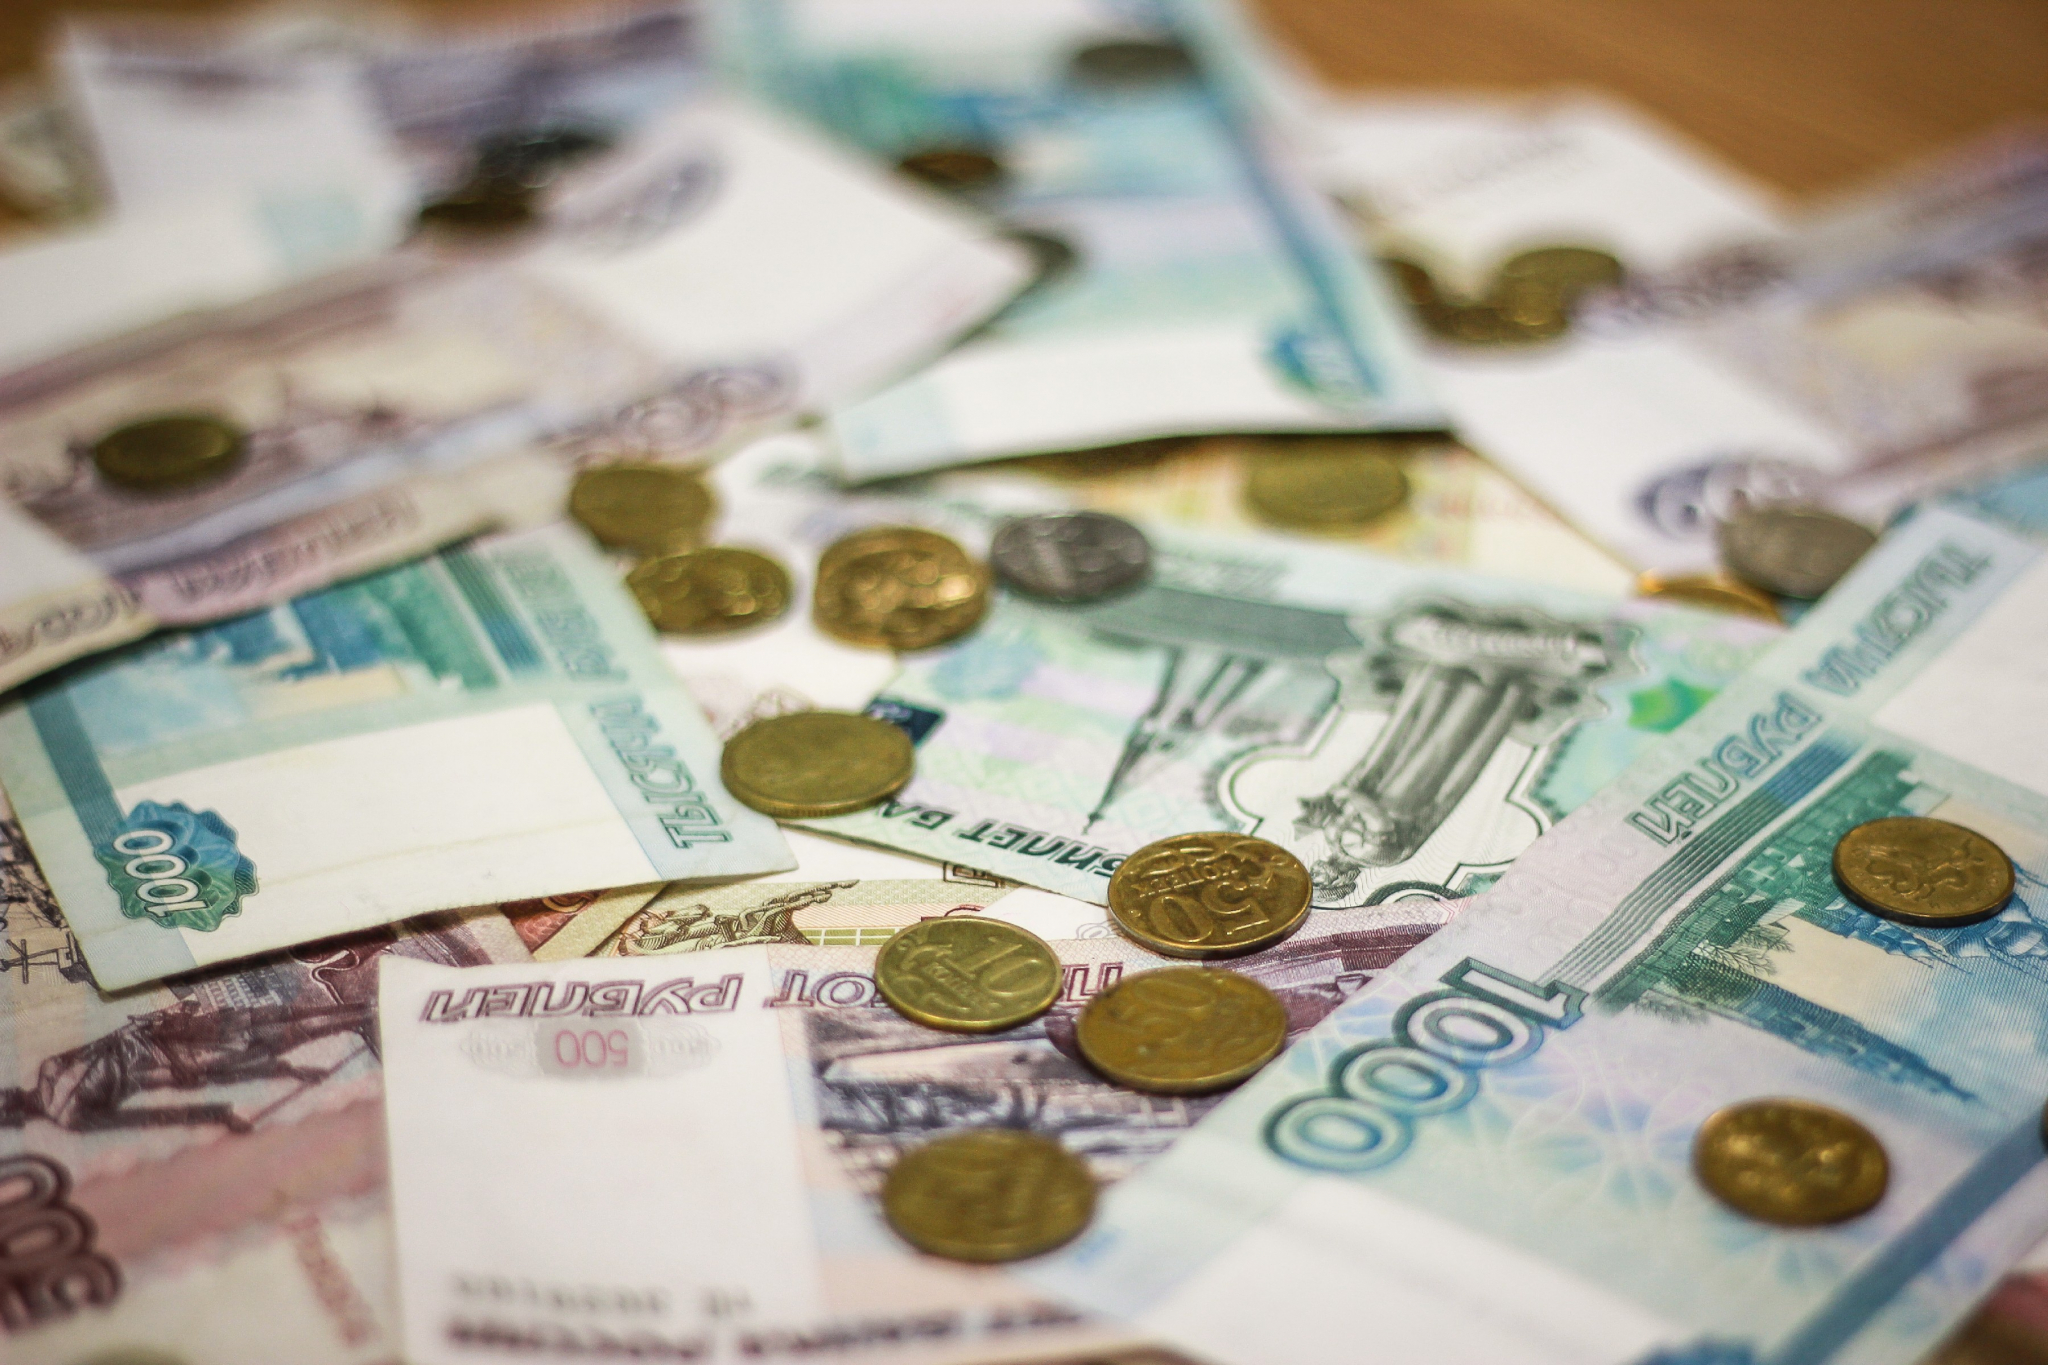 Украли деньги из сейфа, связали менеджера: арестованы мужчины, ограбившие кредитный кооператив в Саранске